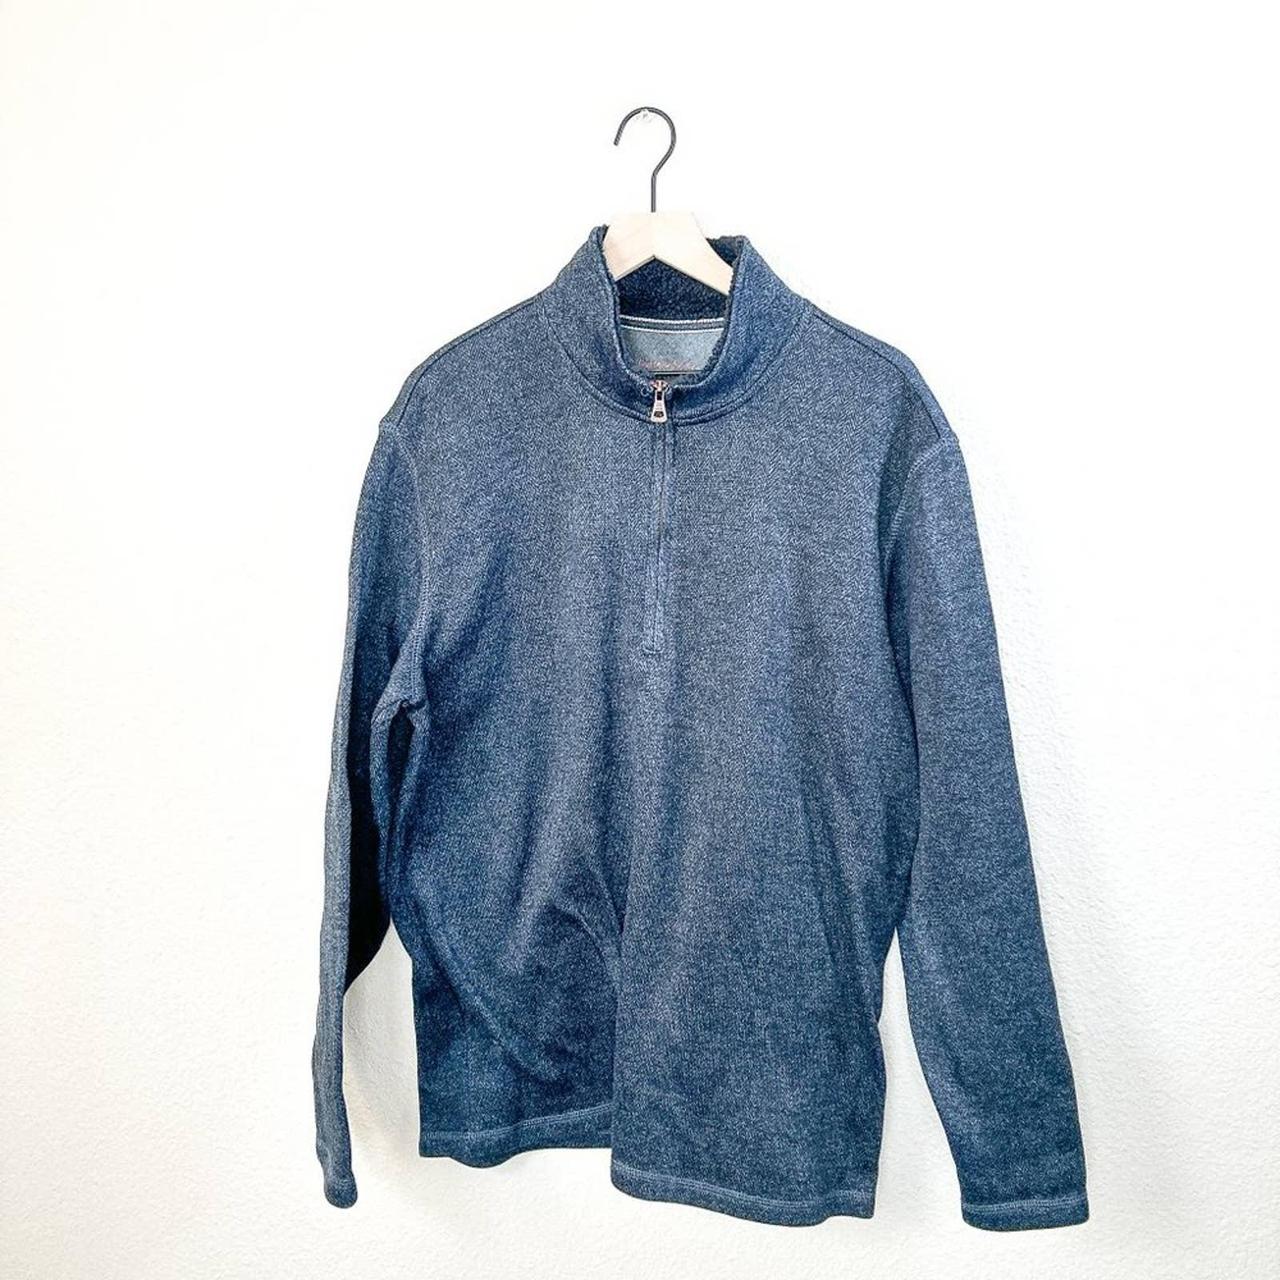 Weatherproof Vintage Quarter Zip Pullover Sweater in... - Depop